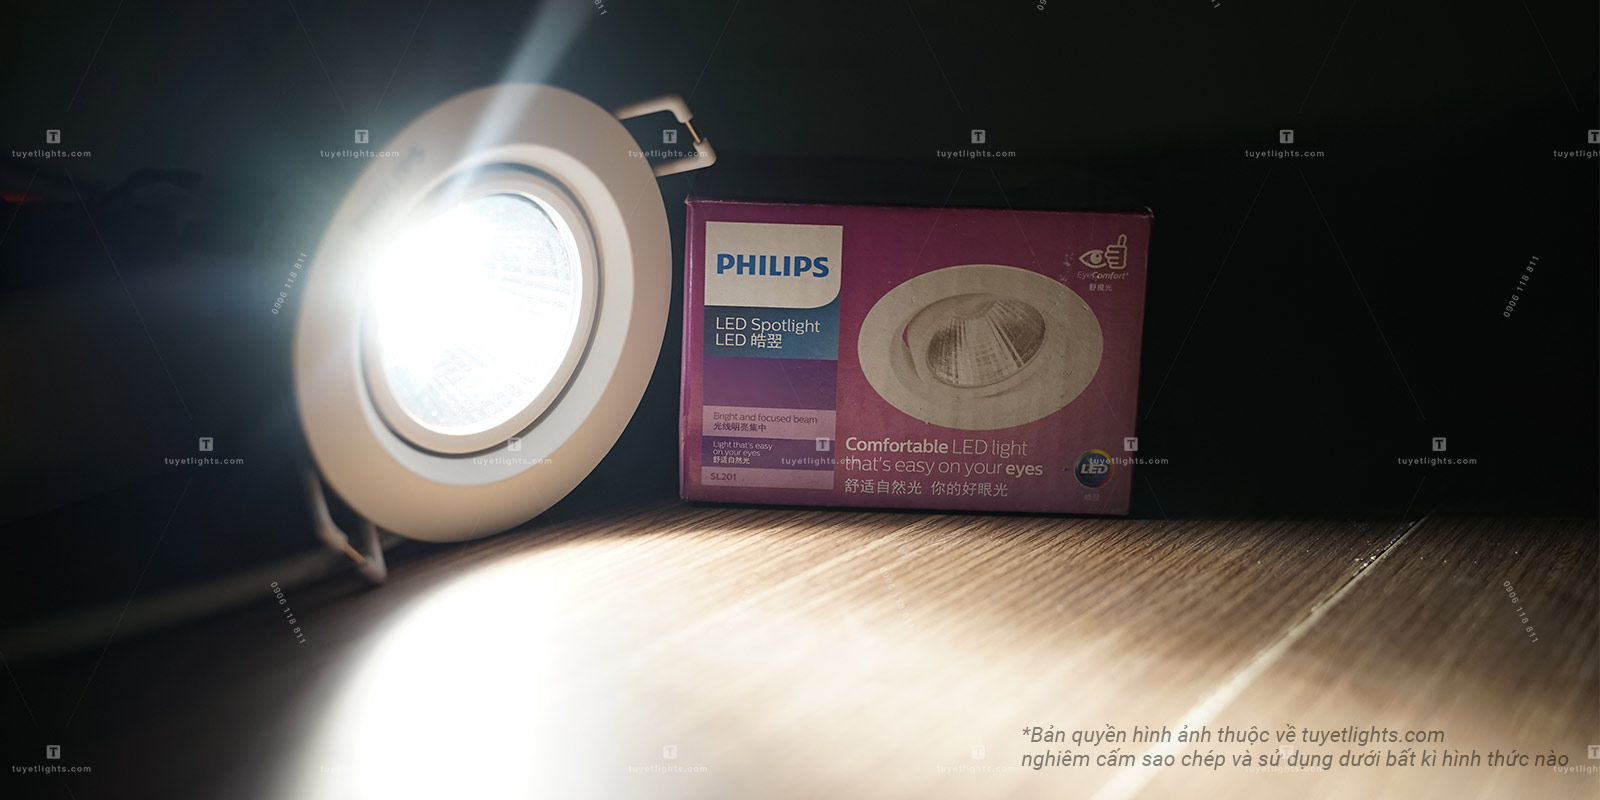 Khả năng tiết kiệm điện vượt trội của đèn LED Philips